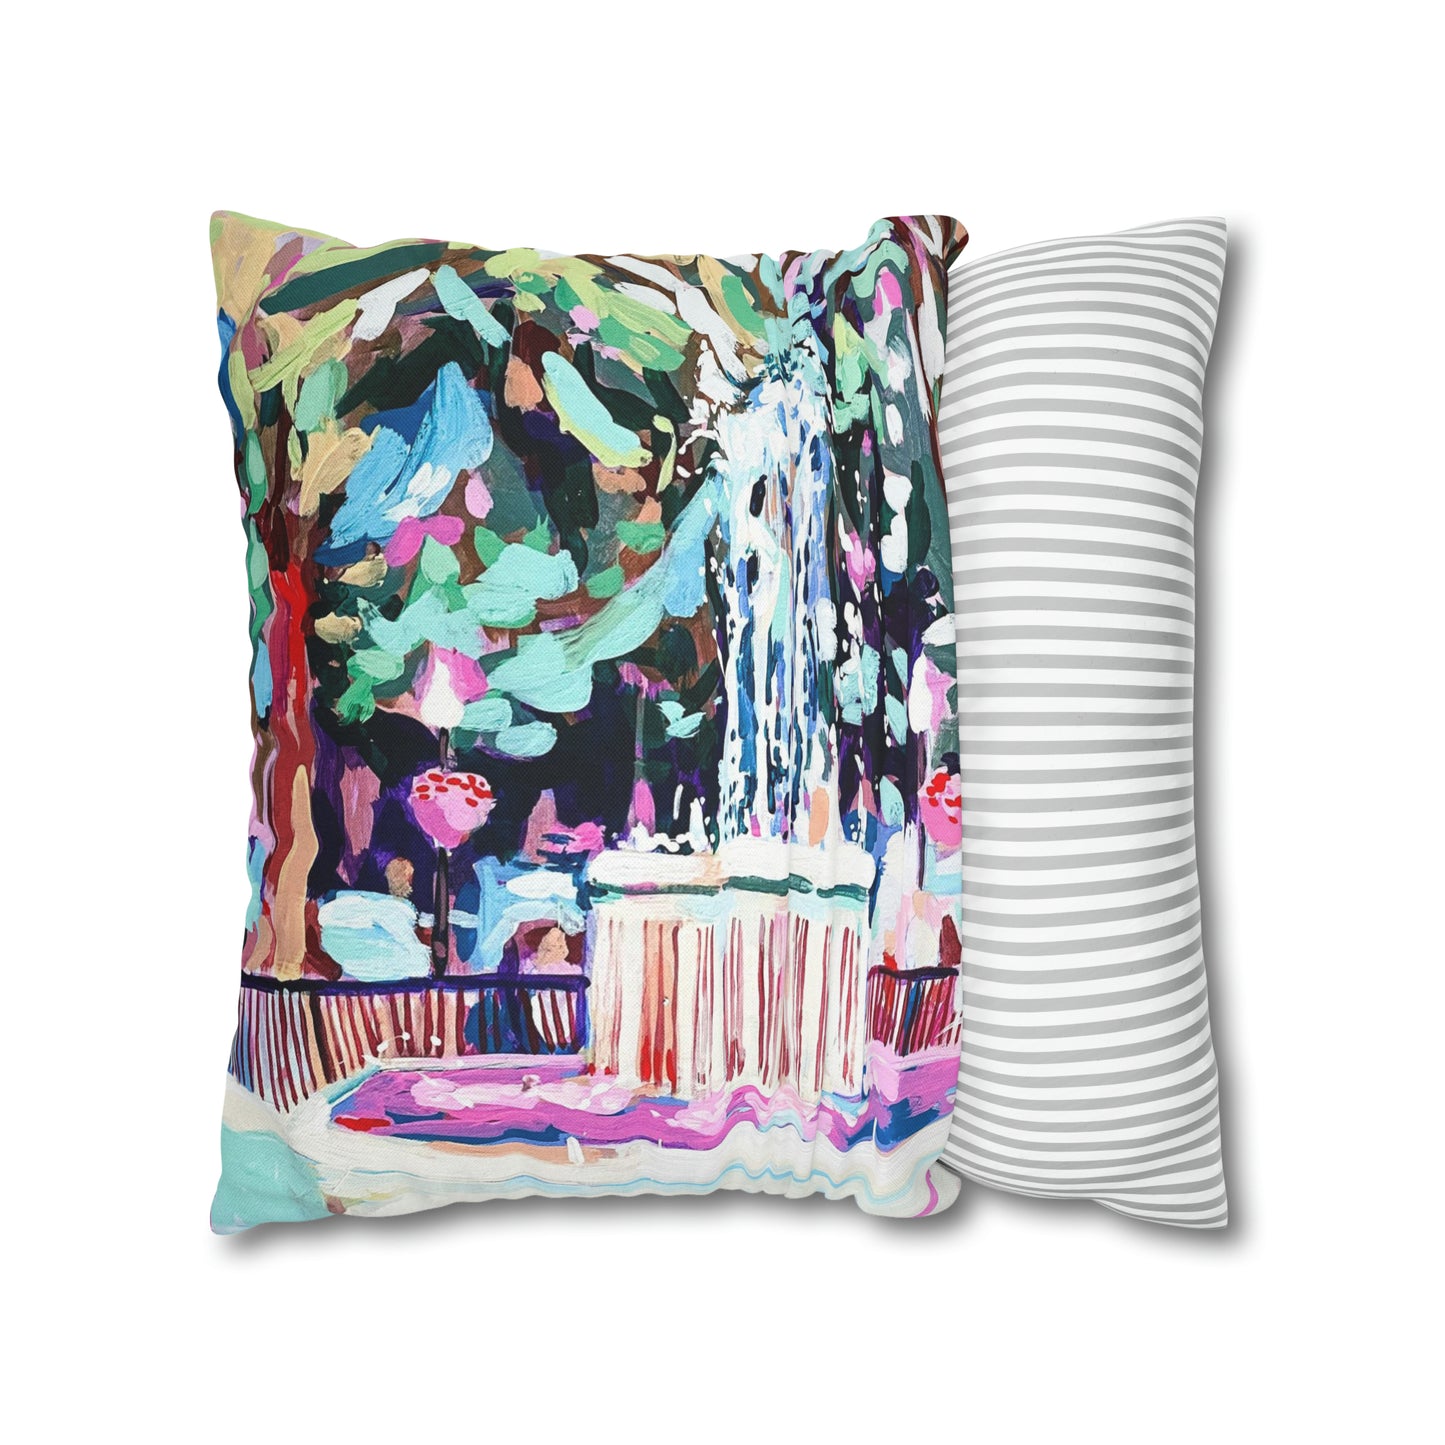 Washington Fountain/Floral pillow cover